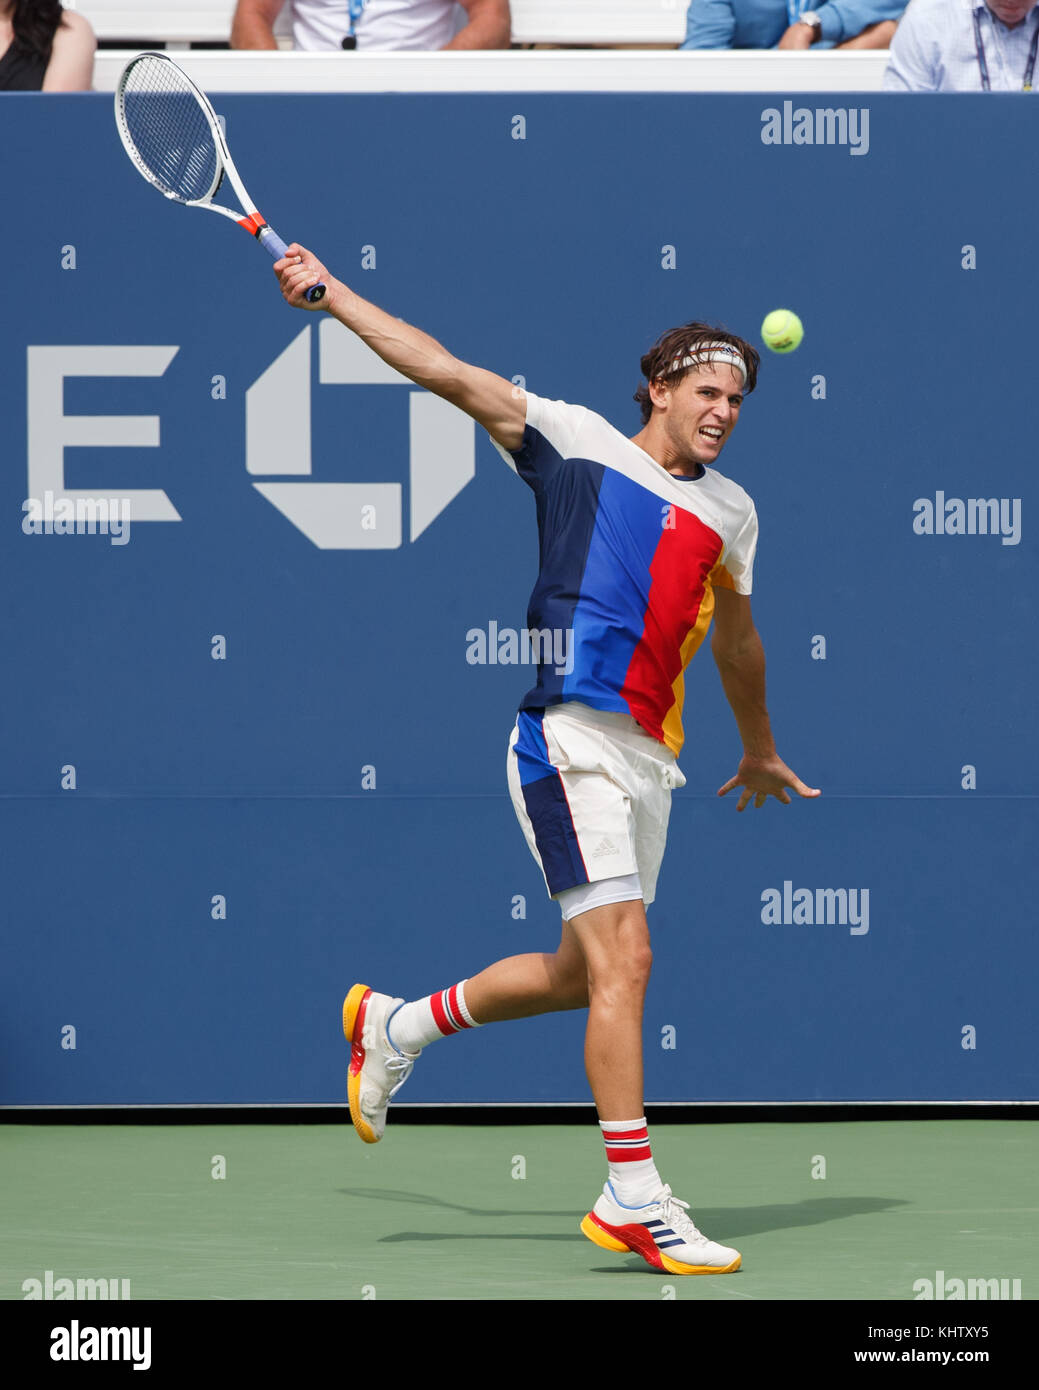 Tenista austriaco dominic thiem (Aut) desempeña escrito disparos durante los hombres escoge el fósforo en el US Open 2017 Campeonato de tenis, New York City, New York Foto de stock